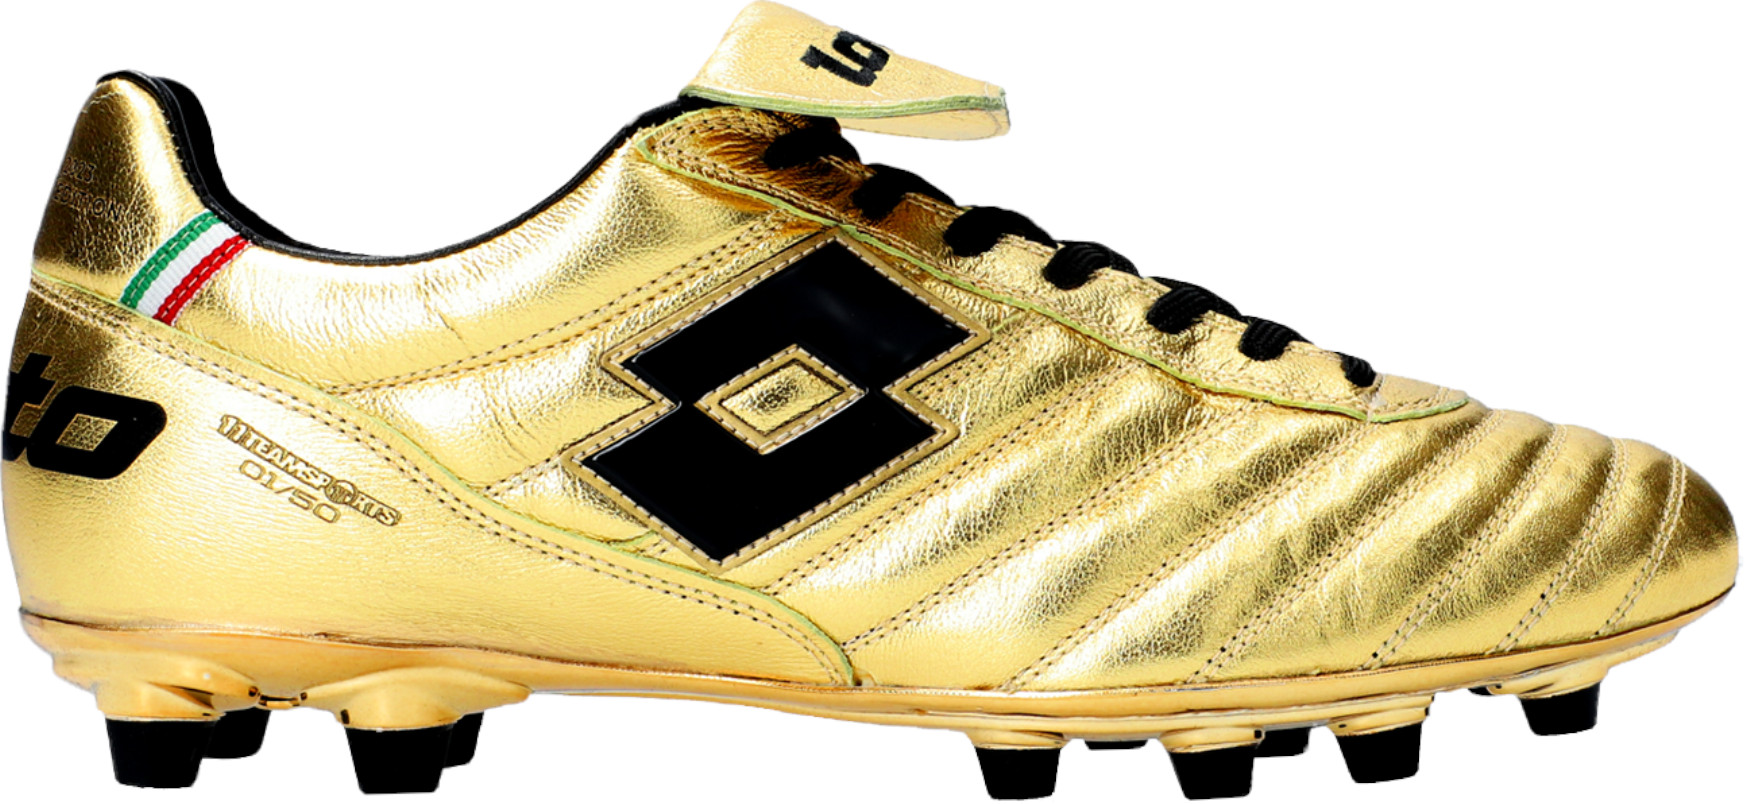 Футболни обувки Lotto Stadio OG II FG 50 Years